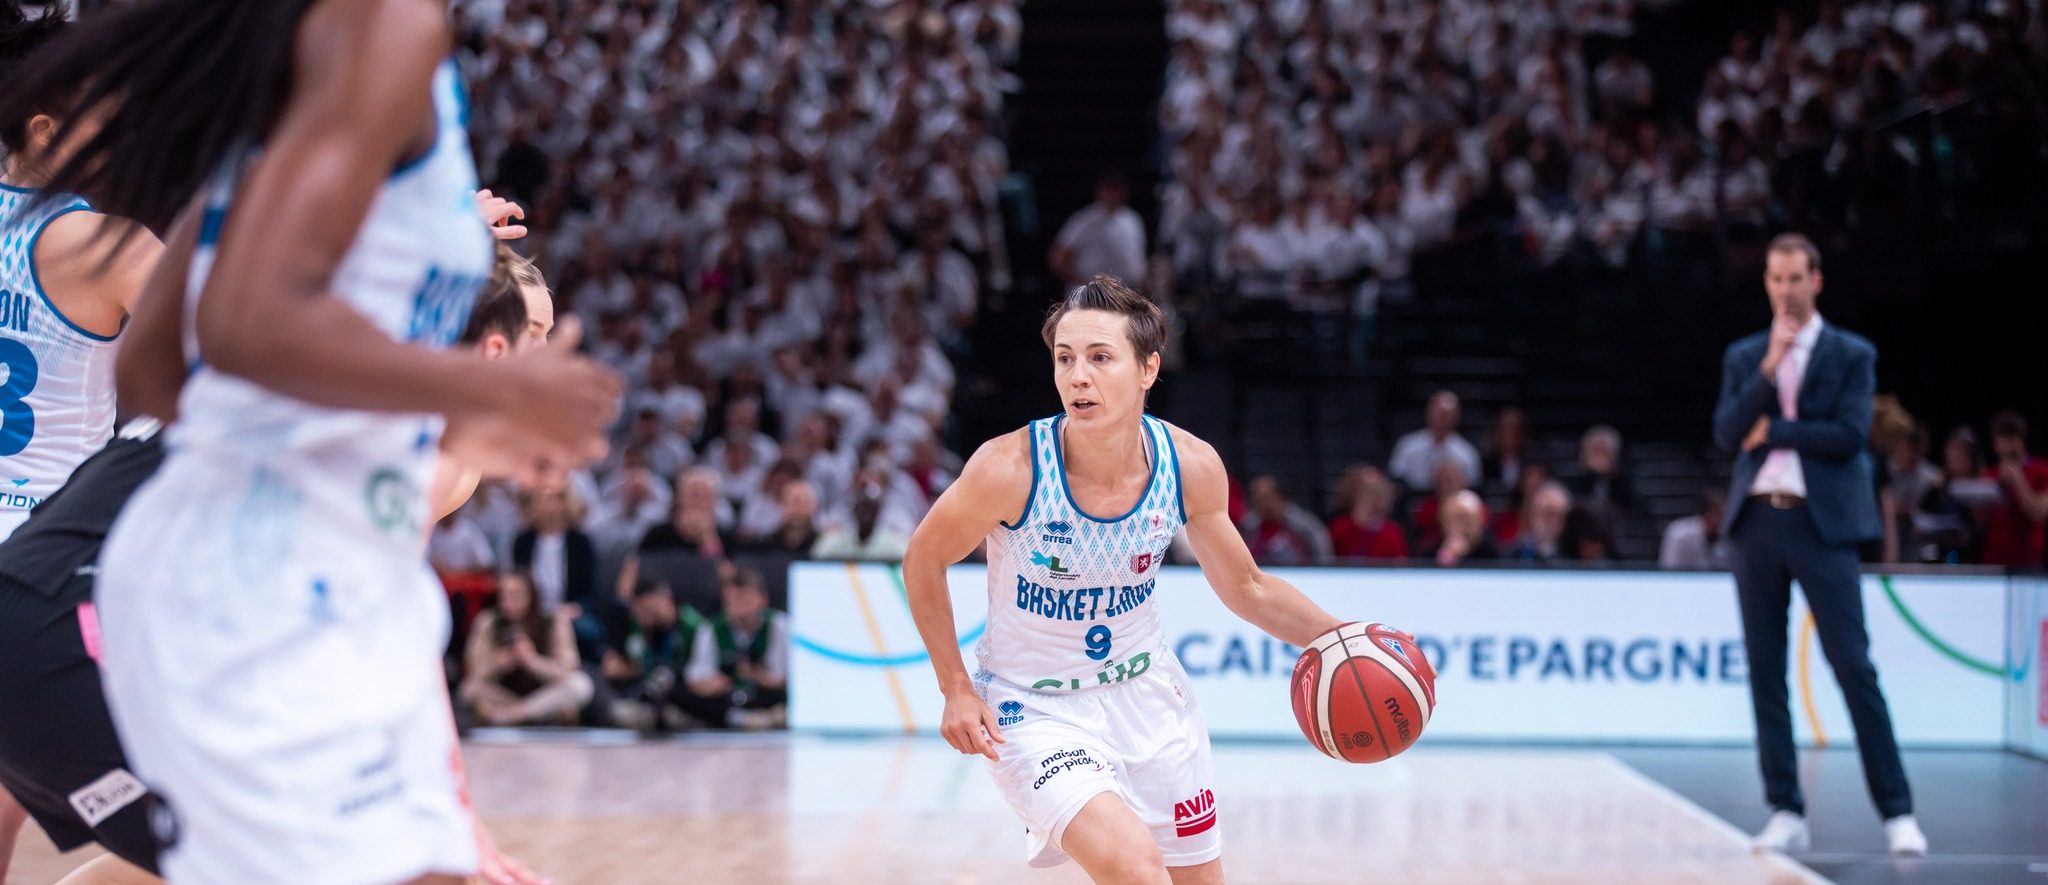 Céline Dumerc a annoncé sa retraite. Elle terminera sa carrière à Basket Landes.